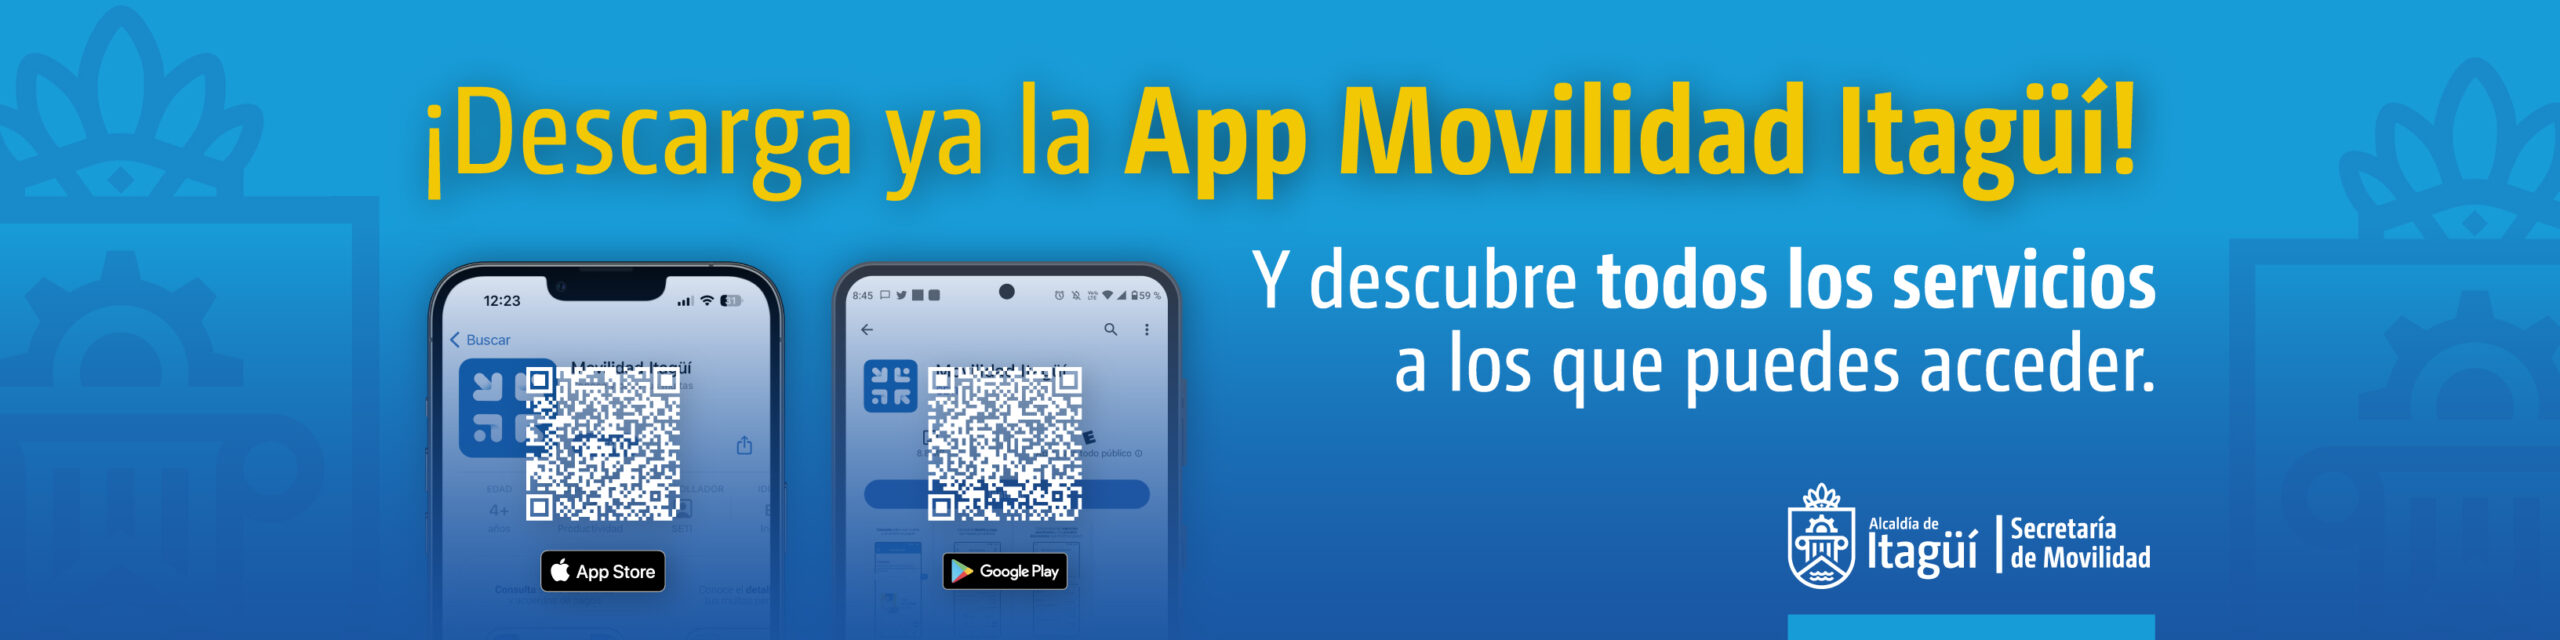 Descarga la App Movilidad Itagüí en Android y Apple y Descubre todos los servicios a los que puedes acceder.